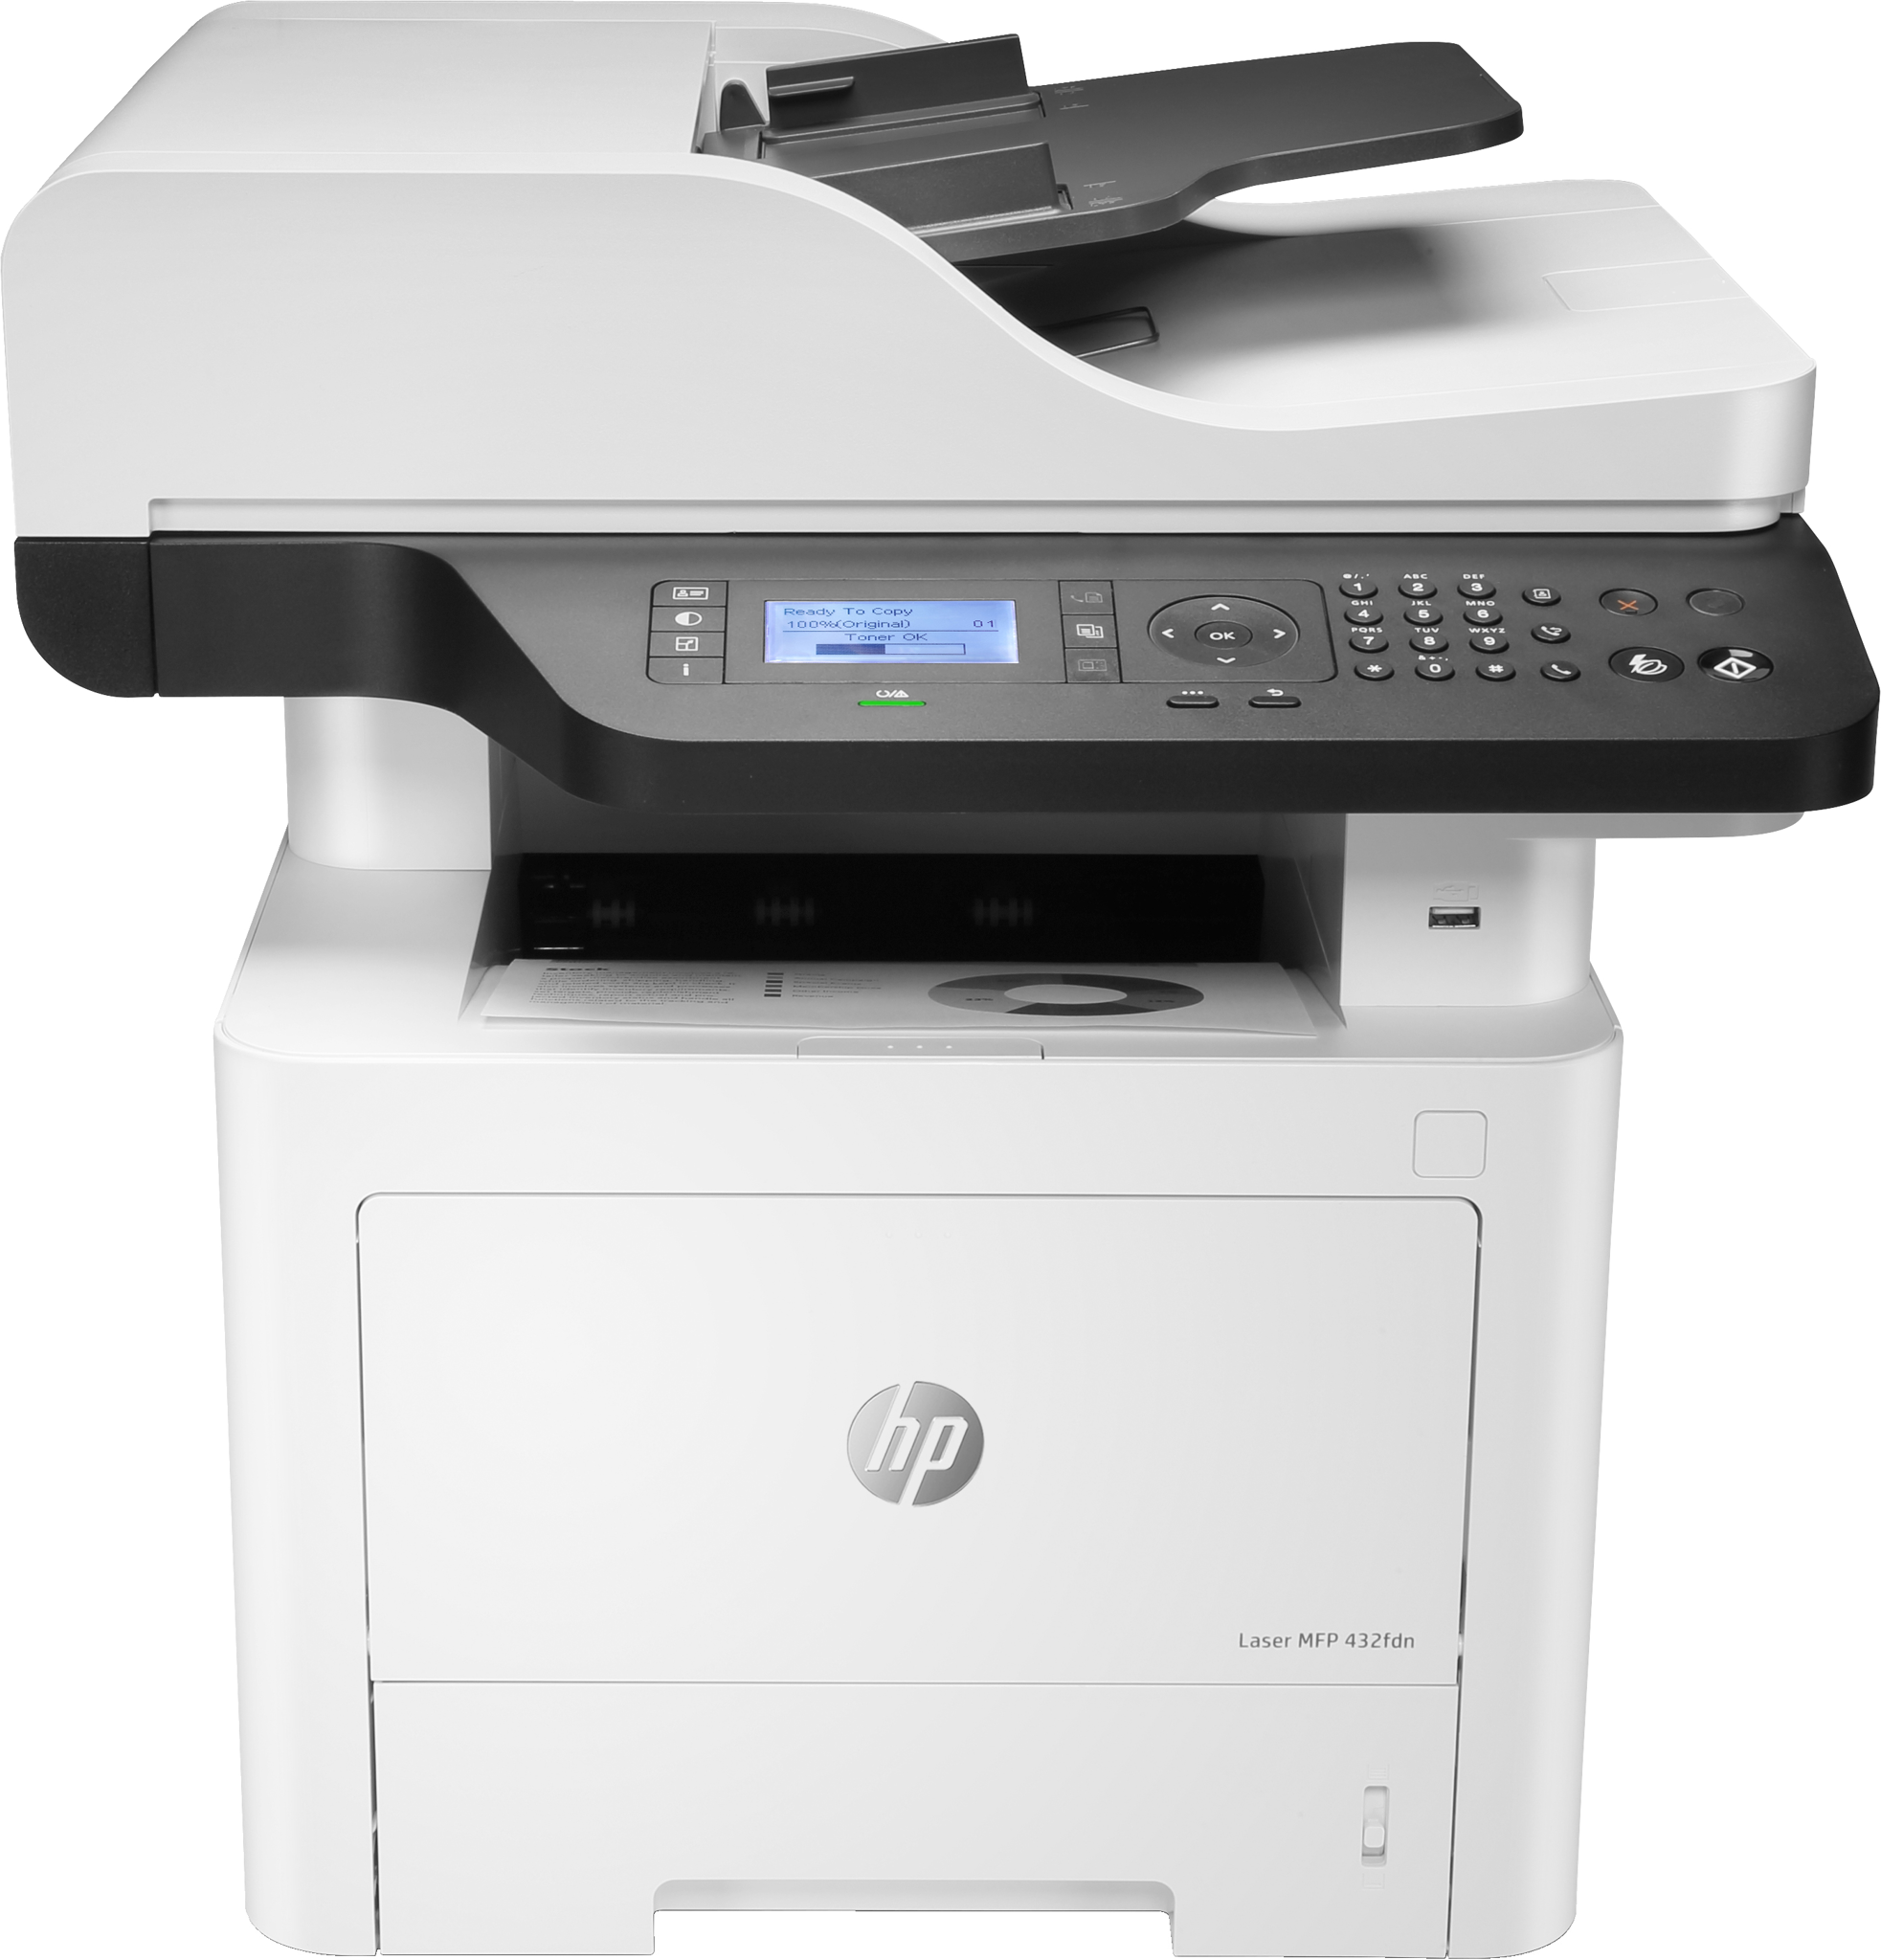 Bild von HP Laser MFP 432fdn - Drucken - Kopieren - Scannen - Faxen - Scannen an E-Mail; Beidseitiger Druck; Autom. Dokumentenzuführung (50 Blatt) - Laser - Monodruck - 1200 x 1200 DPI - A4 - Direktdruck - Schwarz - Weiß